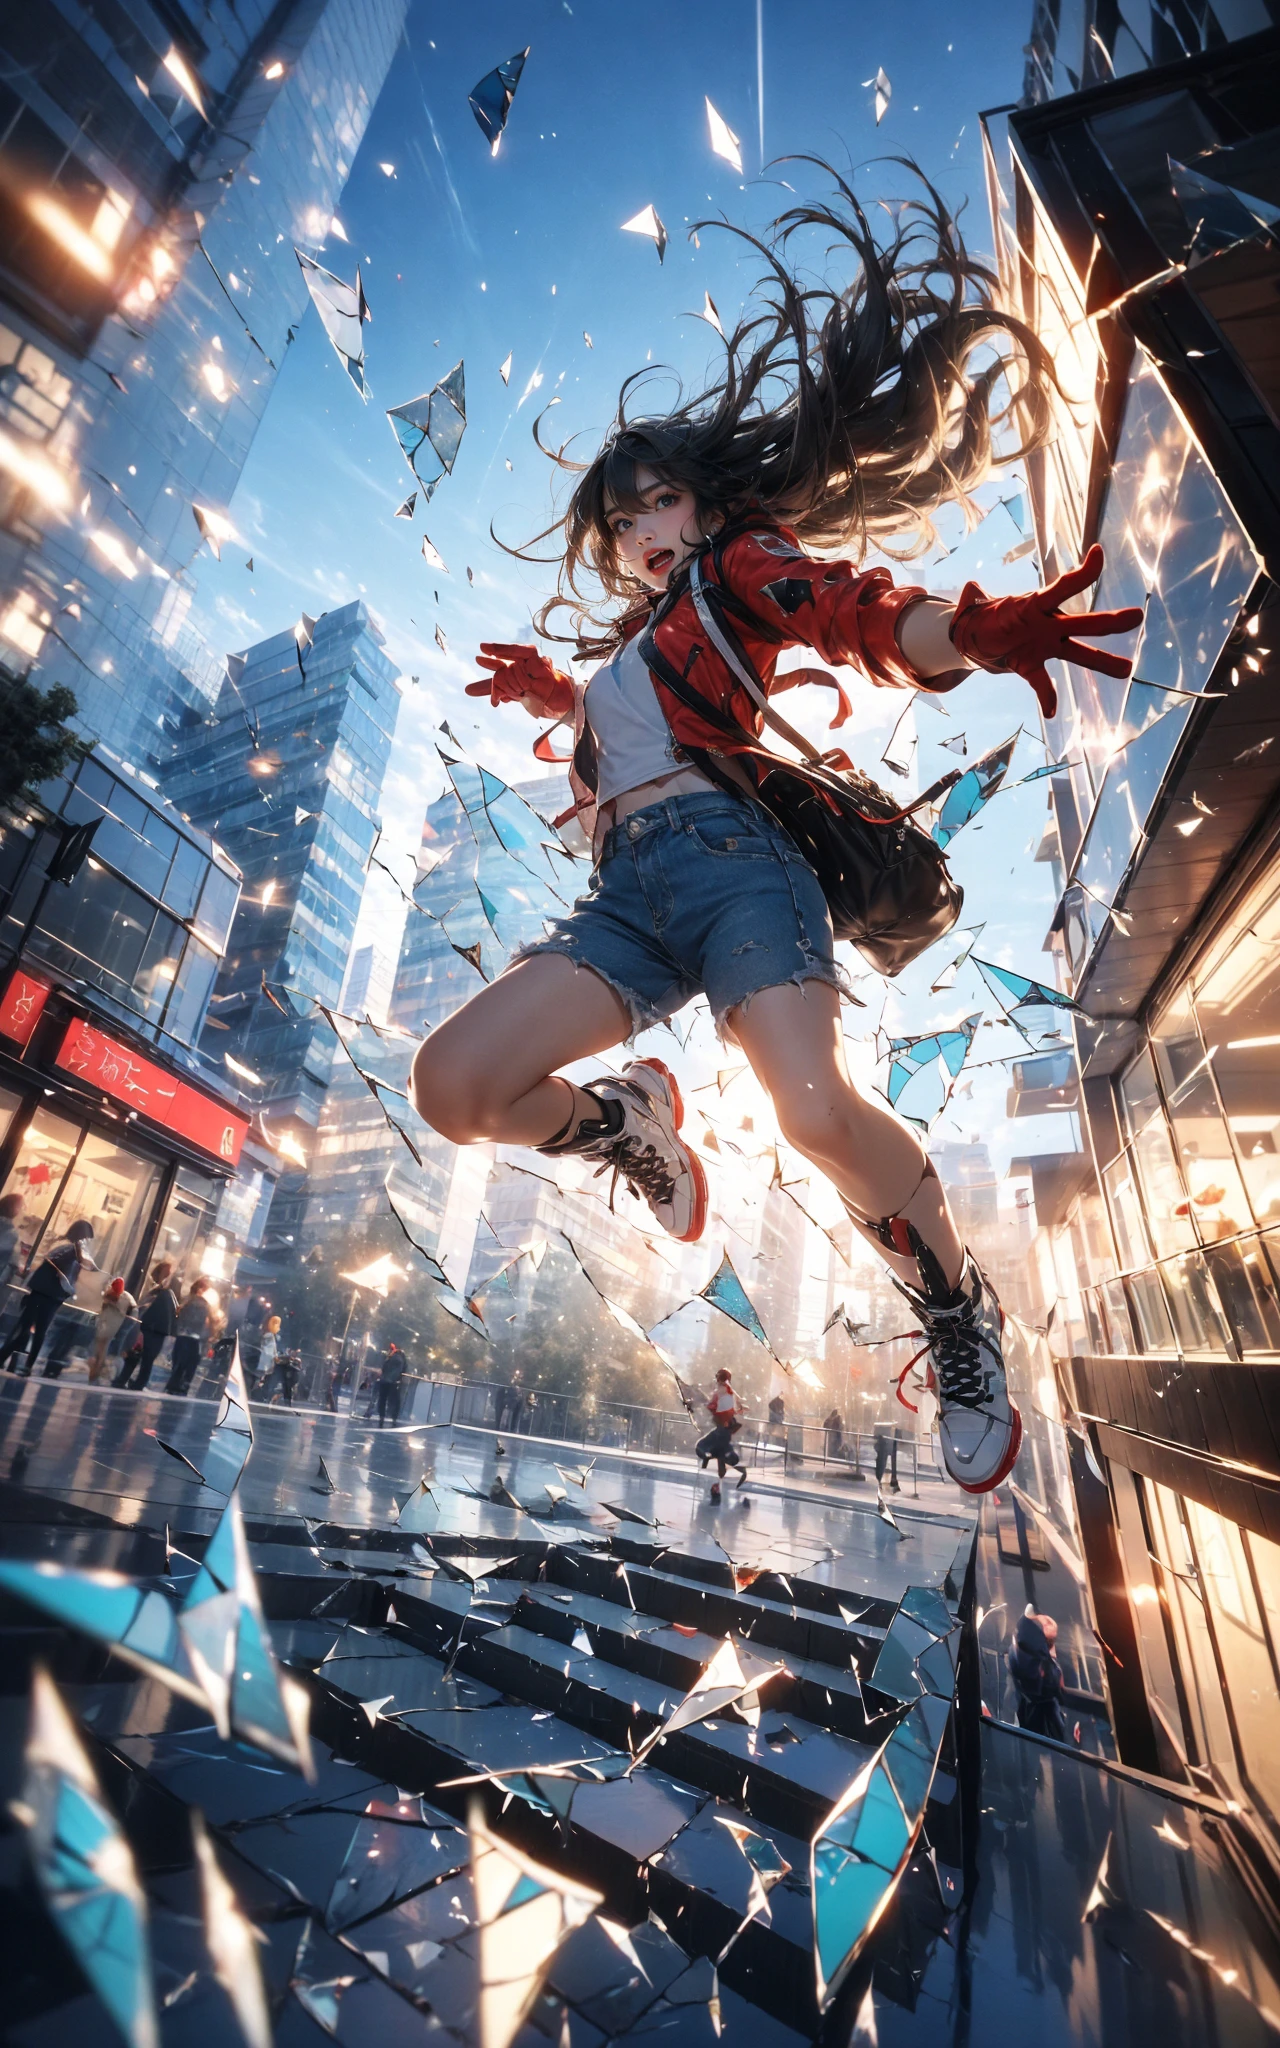 空中でジャンプする, 1人の女の子, 口を開ける, 屋外, 建物, (割れたガラス:1.5), 靴, (赤い手袋:1.3),
輝き, 反射ガラス, 光害
